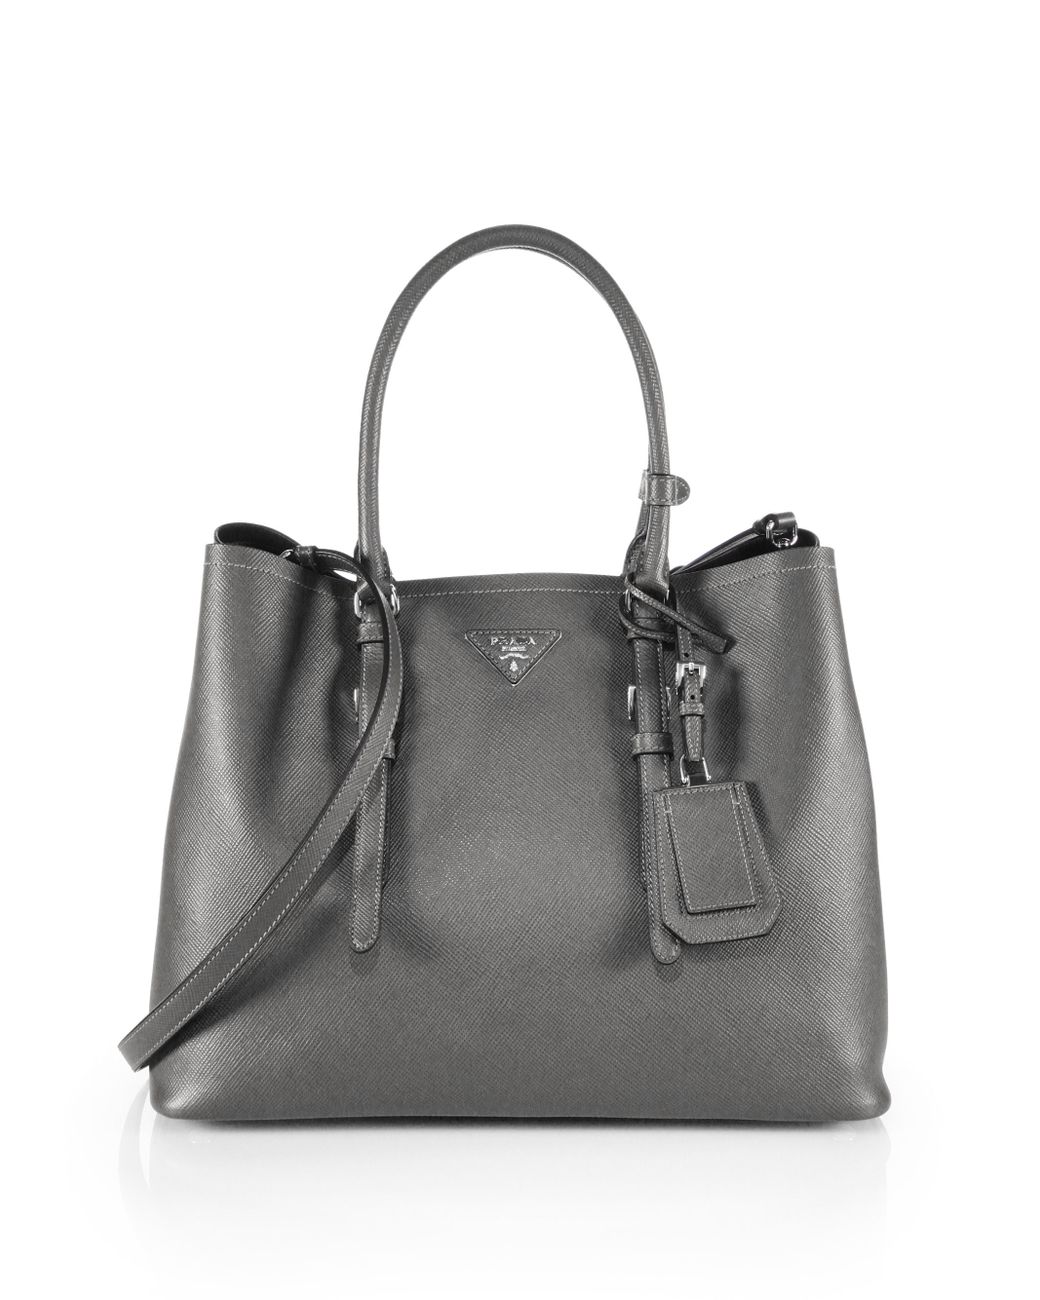 Prada Saffiano Cuir Medium Double Bag in Gray | Lyst